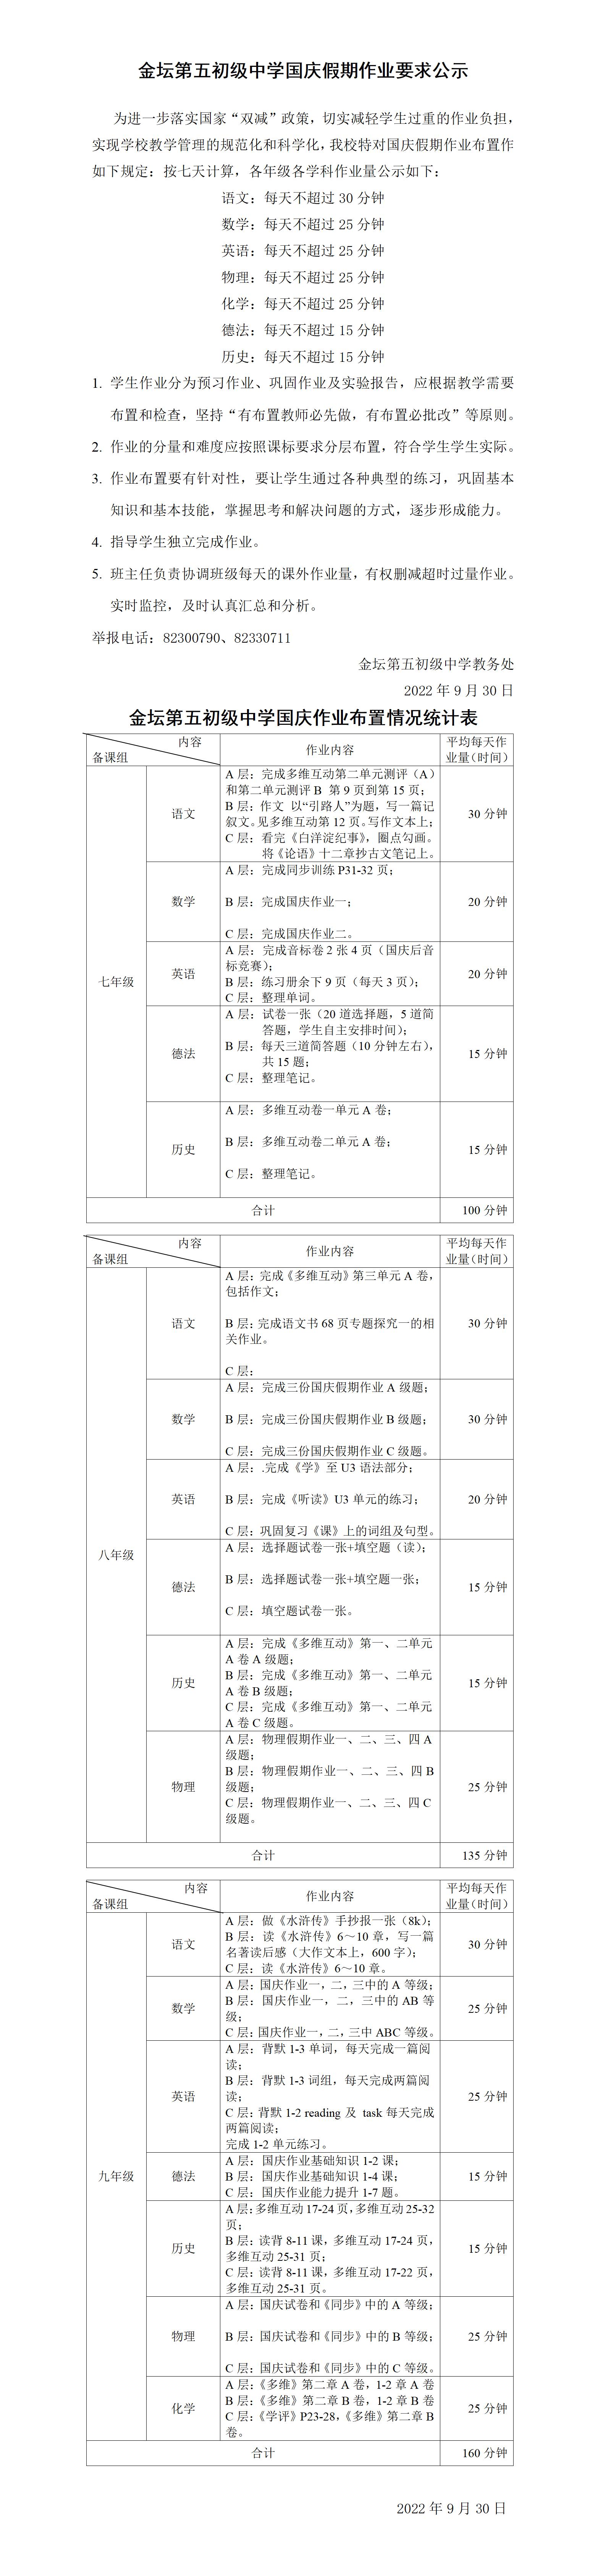 2022秋国庆假期作业要求及作业布置情况统计(4)_01.jpg